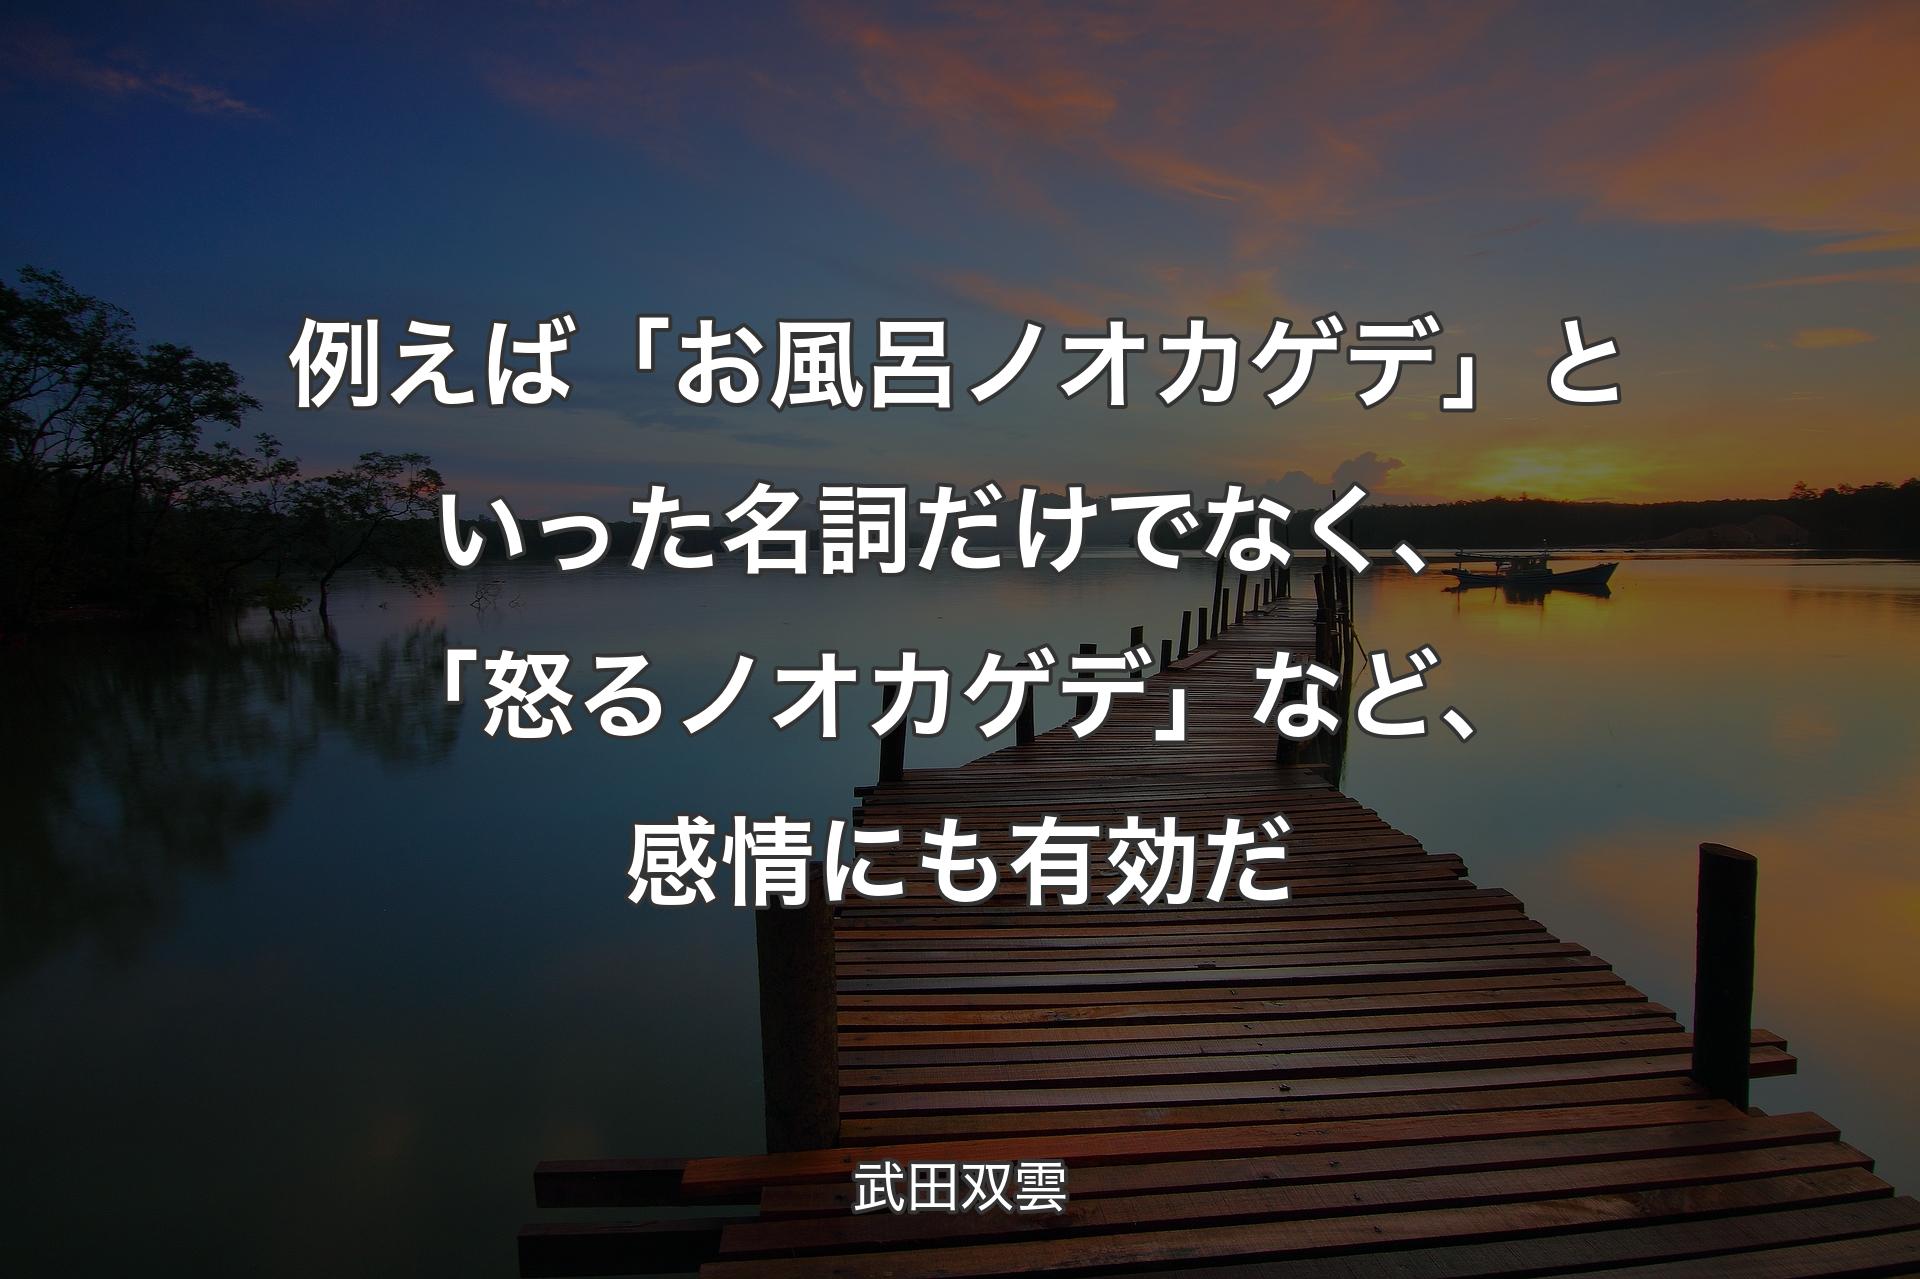 【背景3】例えば「お風呂ノオカゲデ」と�いった名詞だけでなく、「怒るノオカゲデ」など、感情にも有効だ - 武田双雲